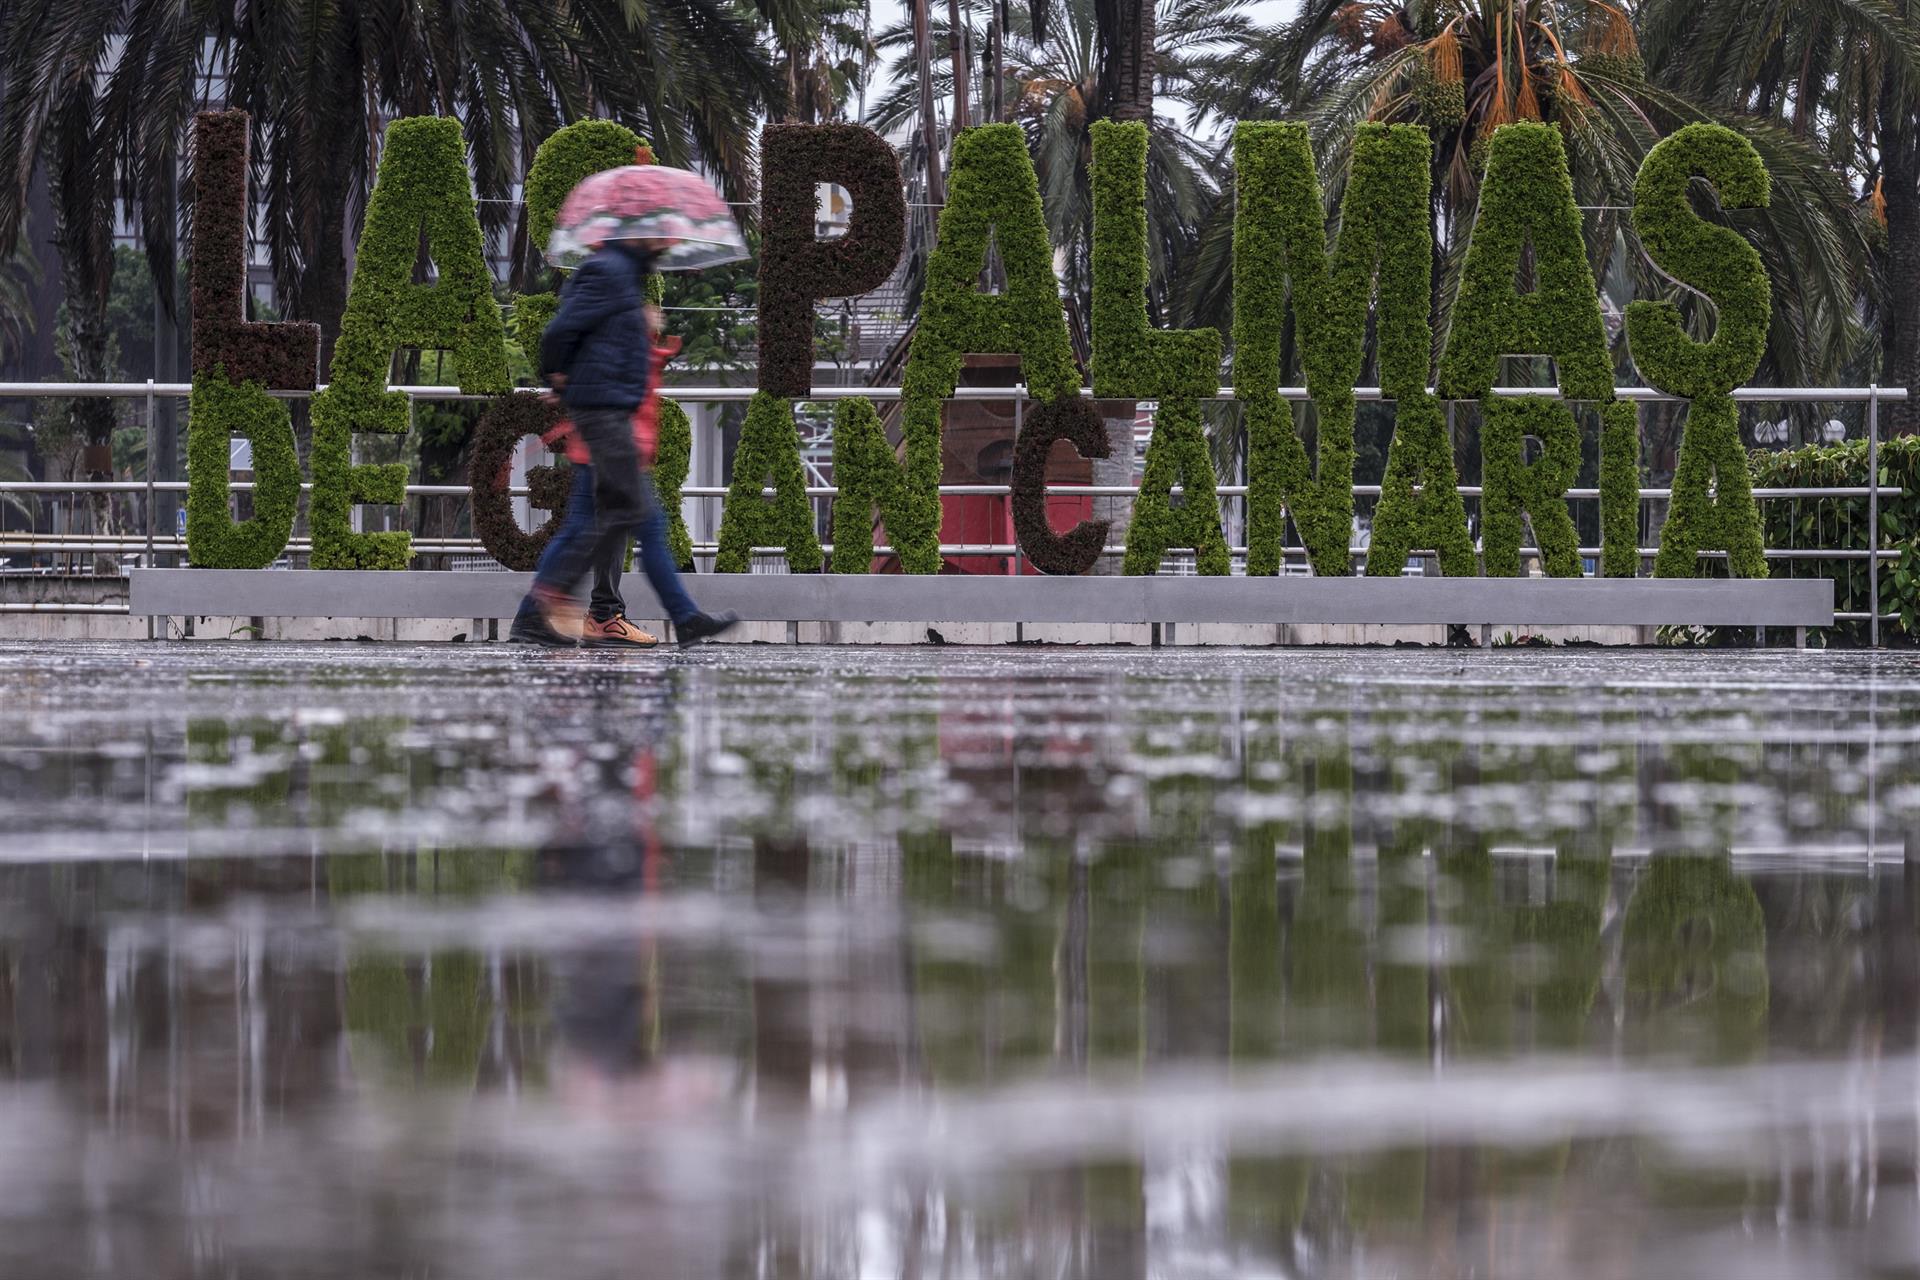 Imagen tomada el sábado 24 de septiembre en Las Palmas de Gran Canaria, en el inicio del episodio de fuertes lluvias. EFE/Ángel Medina G.